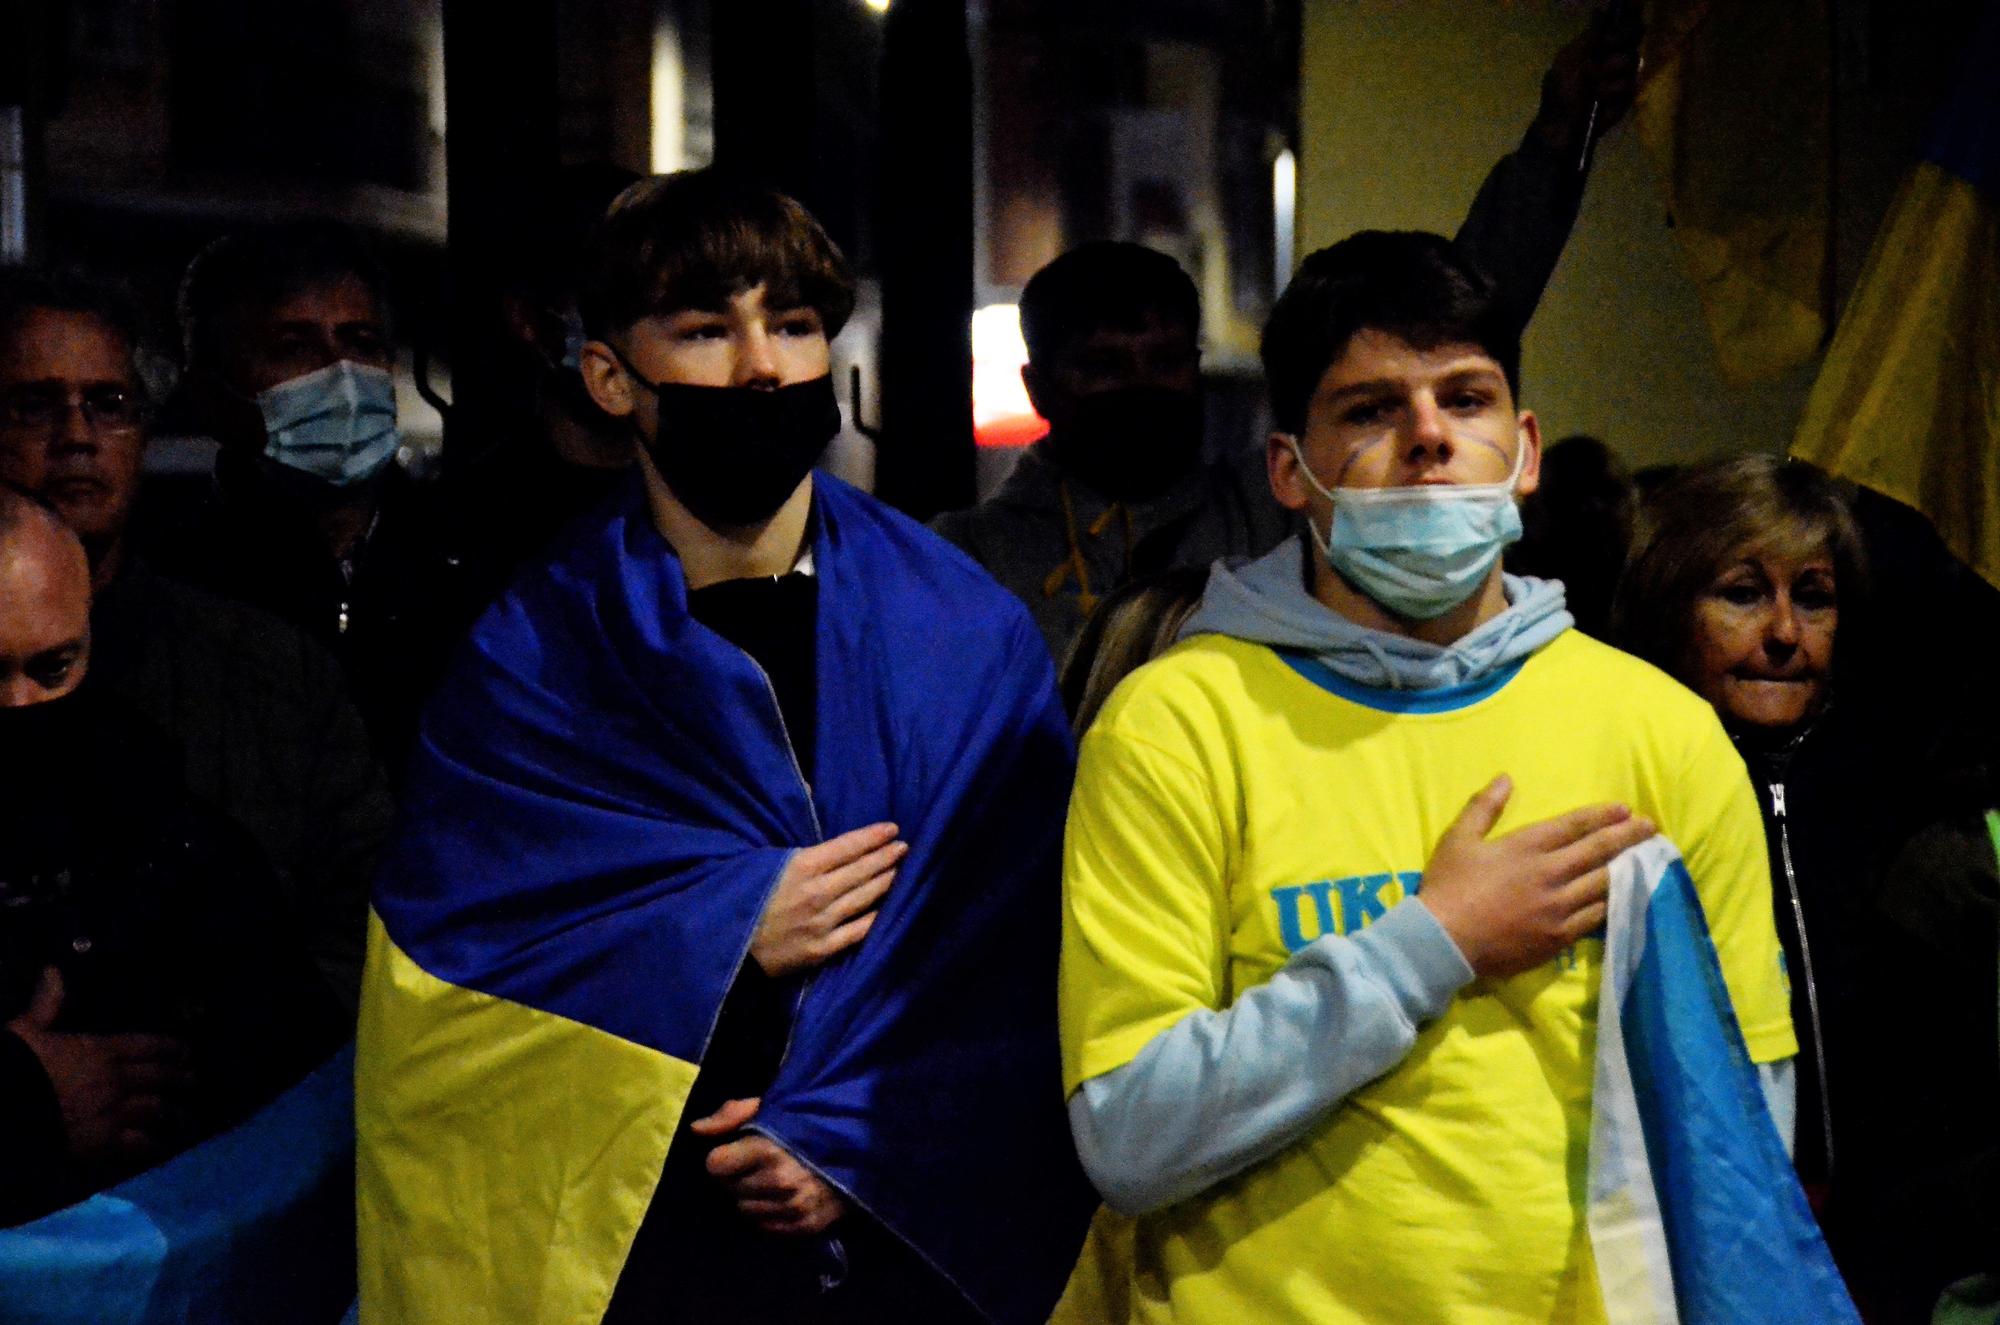 Concentració a Sant Joan de Vilatorrada en suport al poble ucraïnès